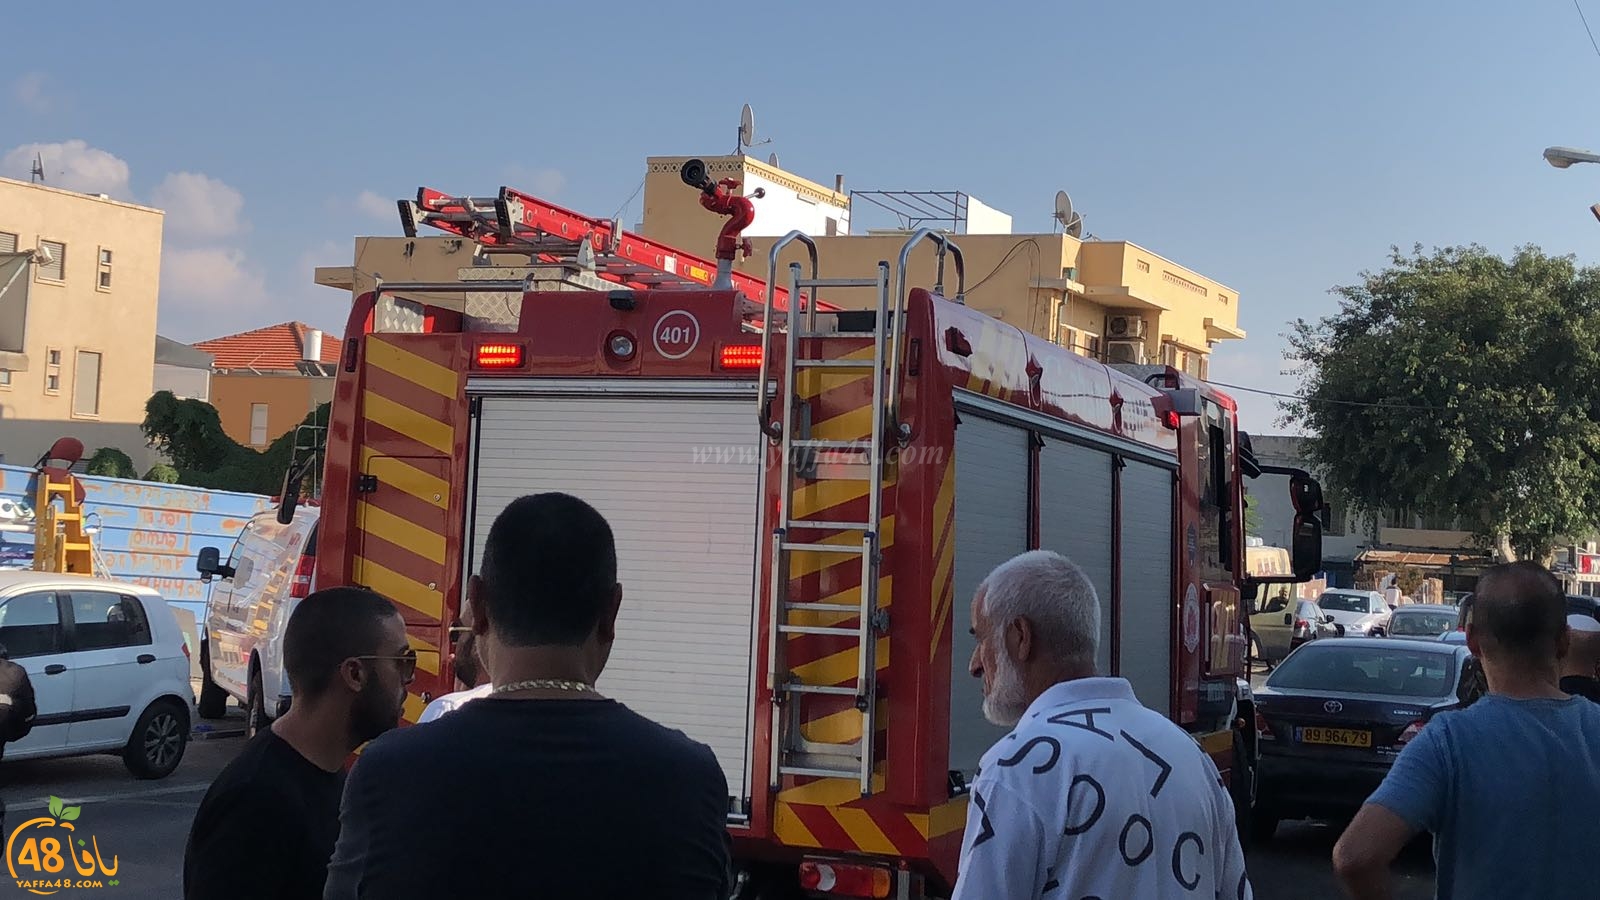 فيديو: القاء زجاجة حارقة تجاه احد المباني في مدينة يافا 